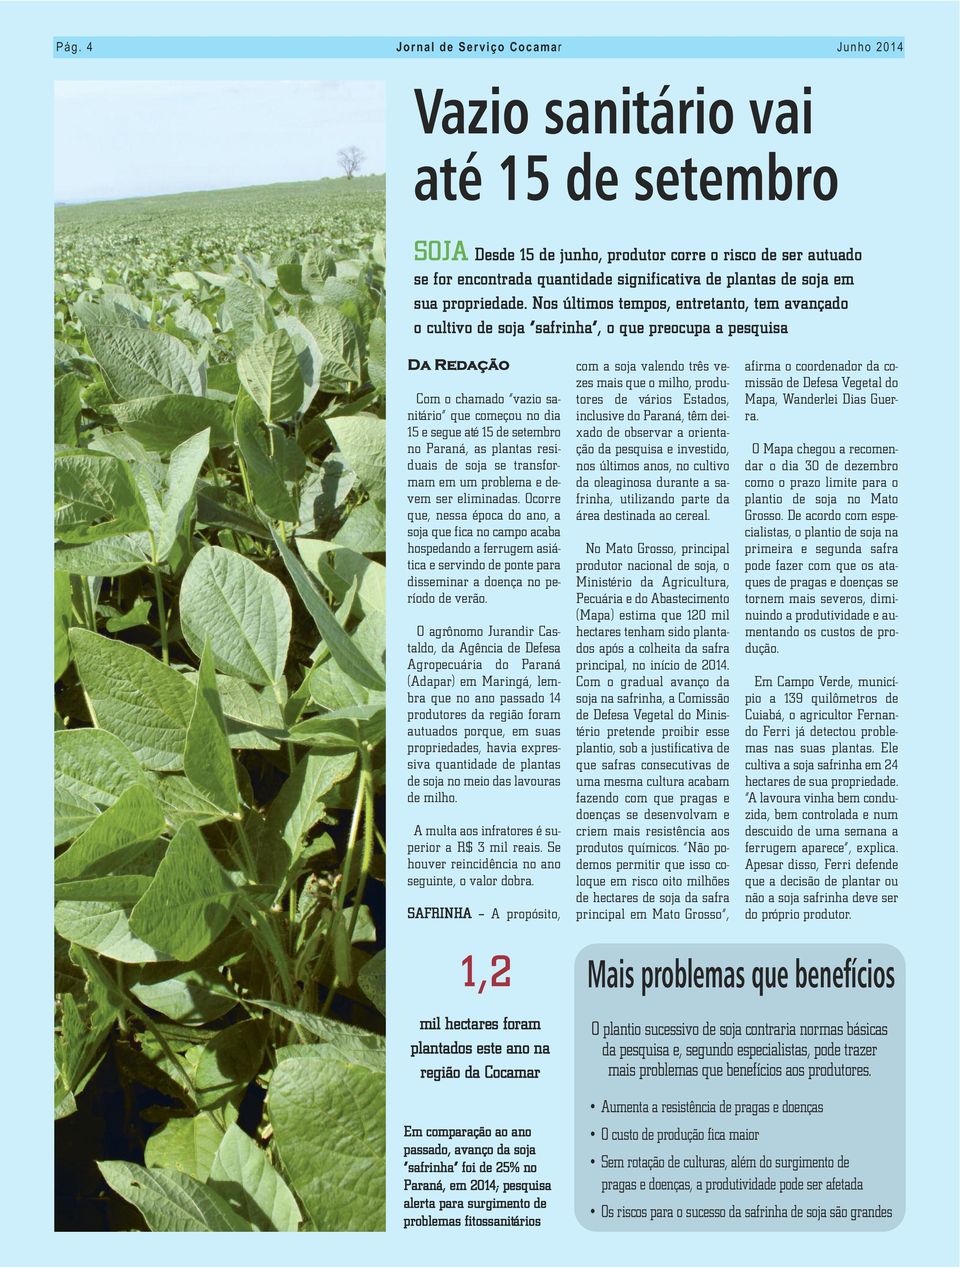 Nos últimos tempos, entretanto, tem avançado o cultivo de soja safrinha, o que preocupa a pesquisa Da Redação Com o chamado vazio sanitário que começou no dia 15 e segue até 15 de setembro no Paraná,